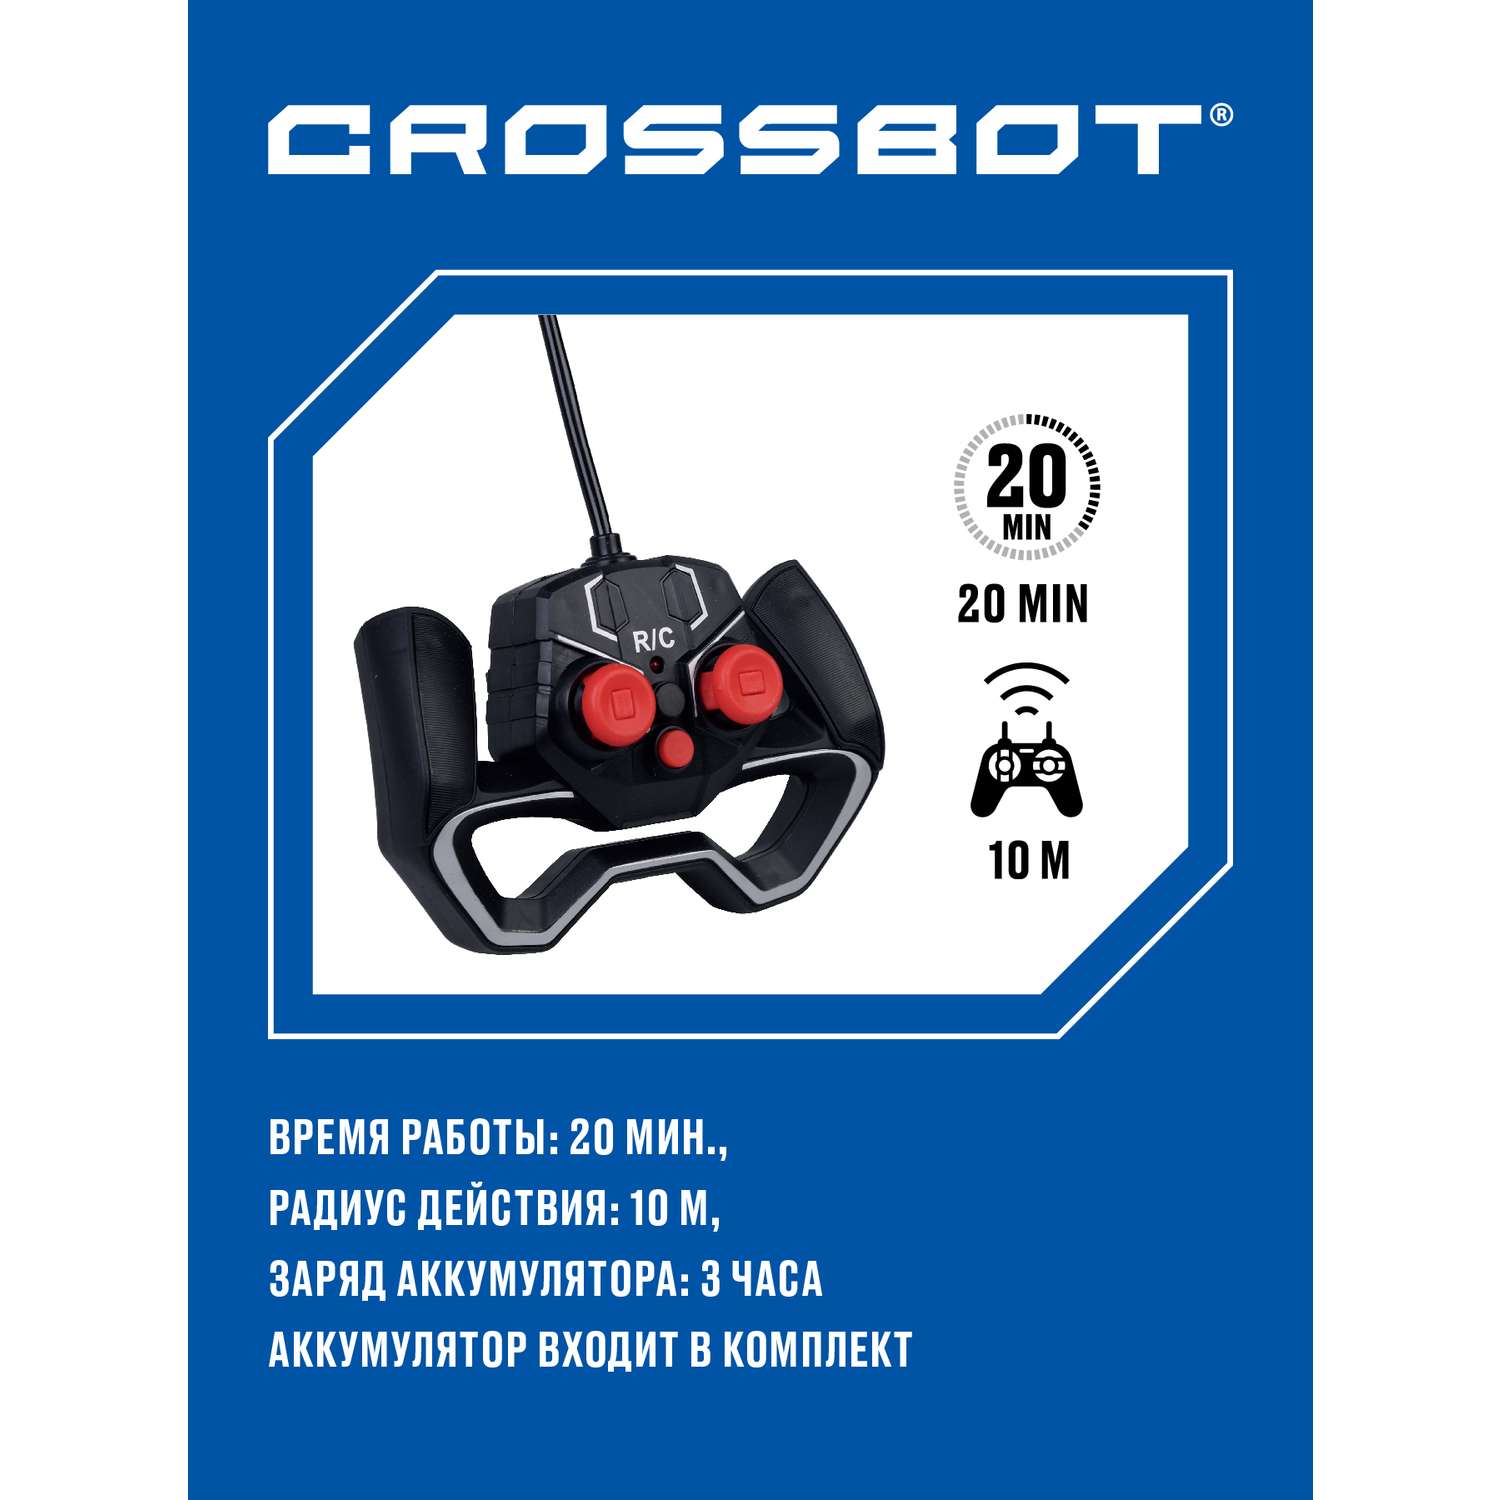 Машина на пульте управления CROSSBOT для детей с подсветкой корпуса Лазеркар - фото 4